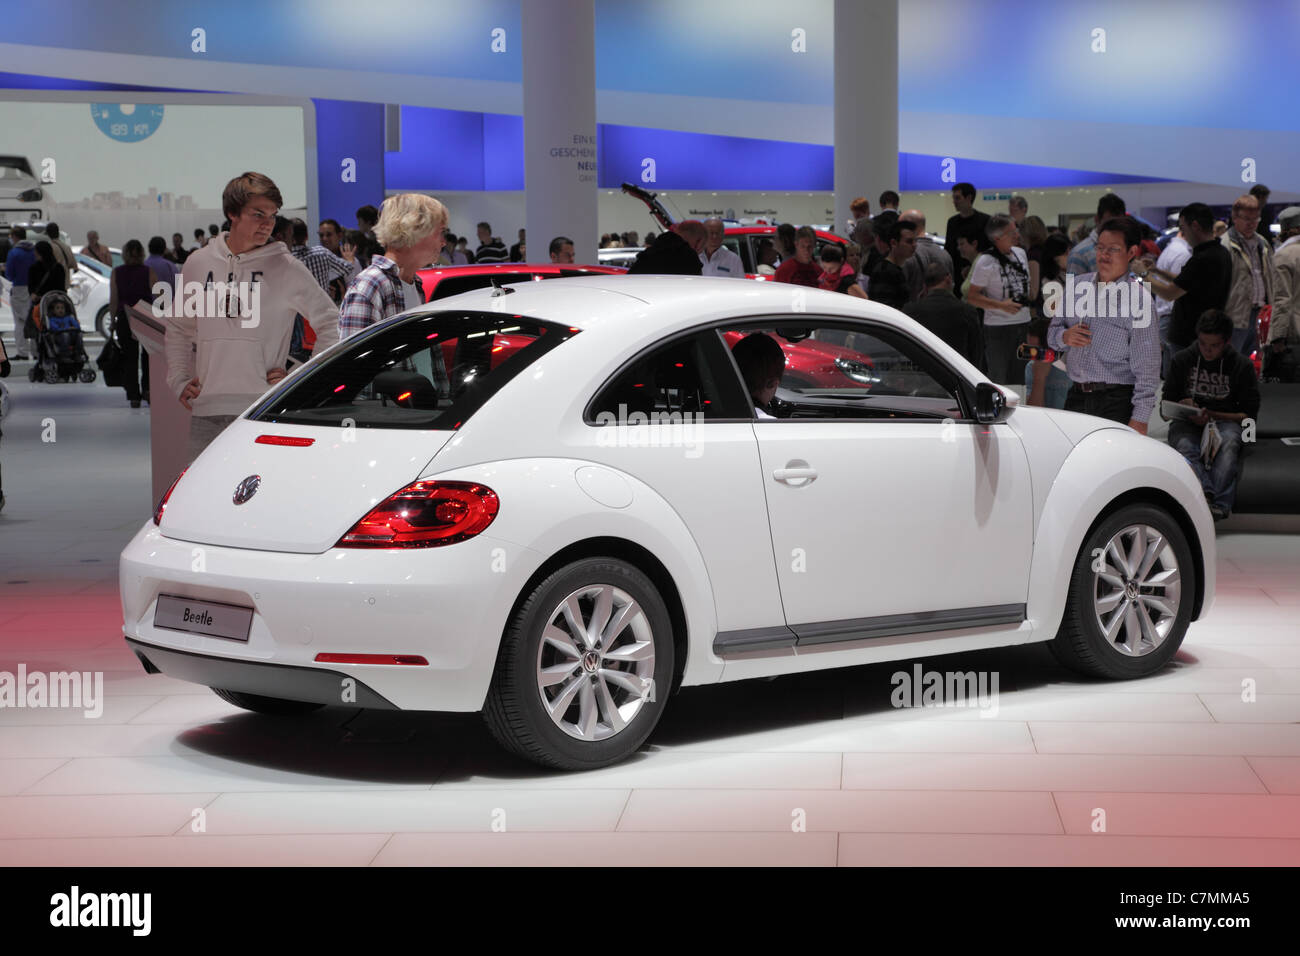 La nouvelle VW Beetle à la 64ème IAA (Internationale Automobil Ausstellung) Le 24 septembre 2011 à Francfort Banque D'Images